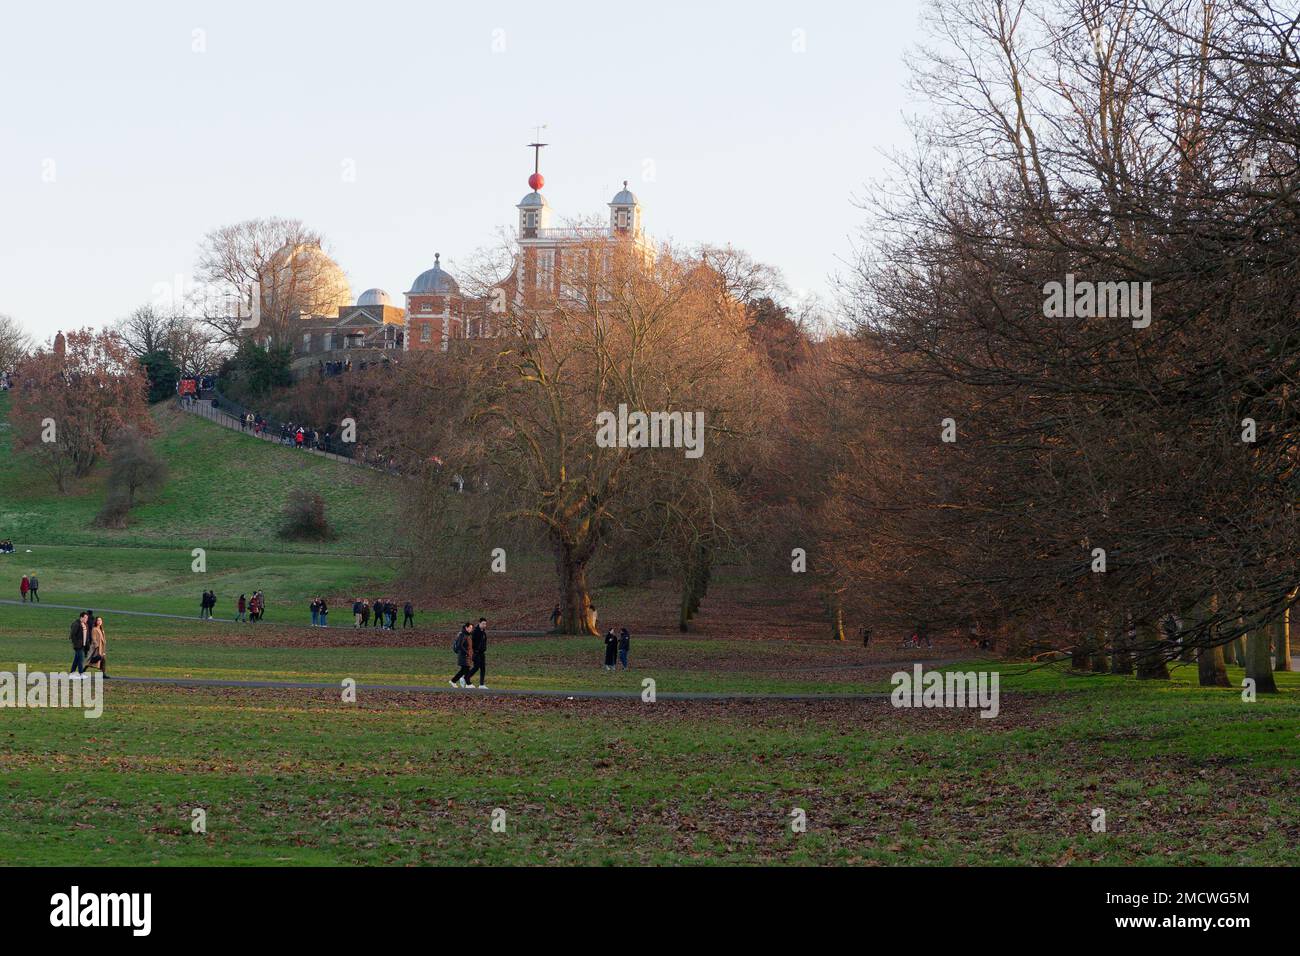 Persone che camminano nel Greenwich Park in una giornata d'inverno con il Royal Observatory sulla collina sopra. Londra Inghilterra. Foto Stock